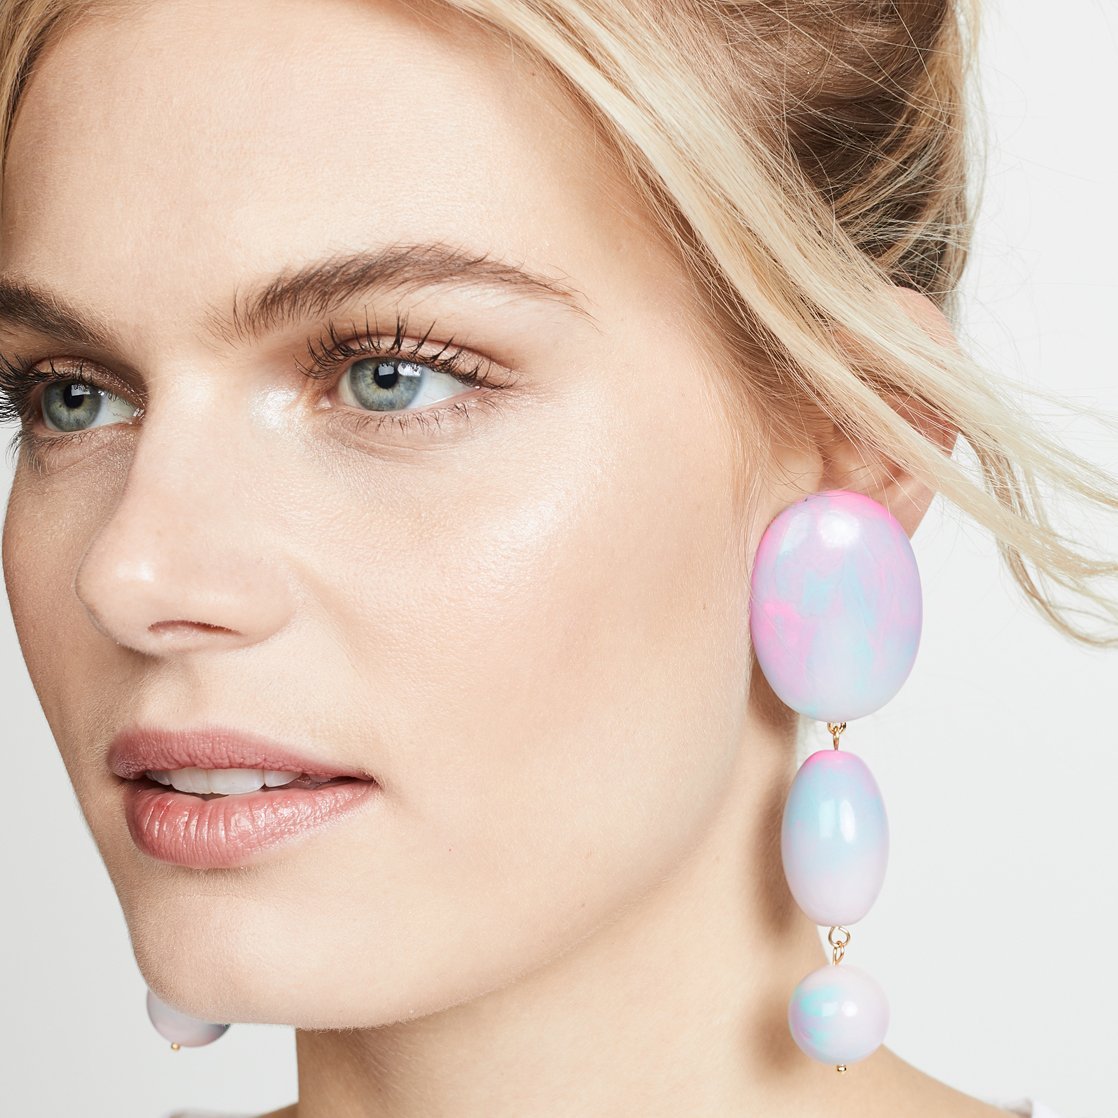 Large bubblegum earrings